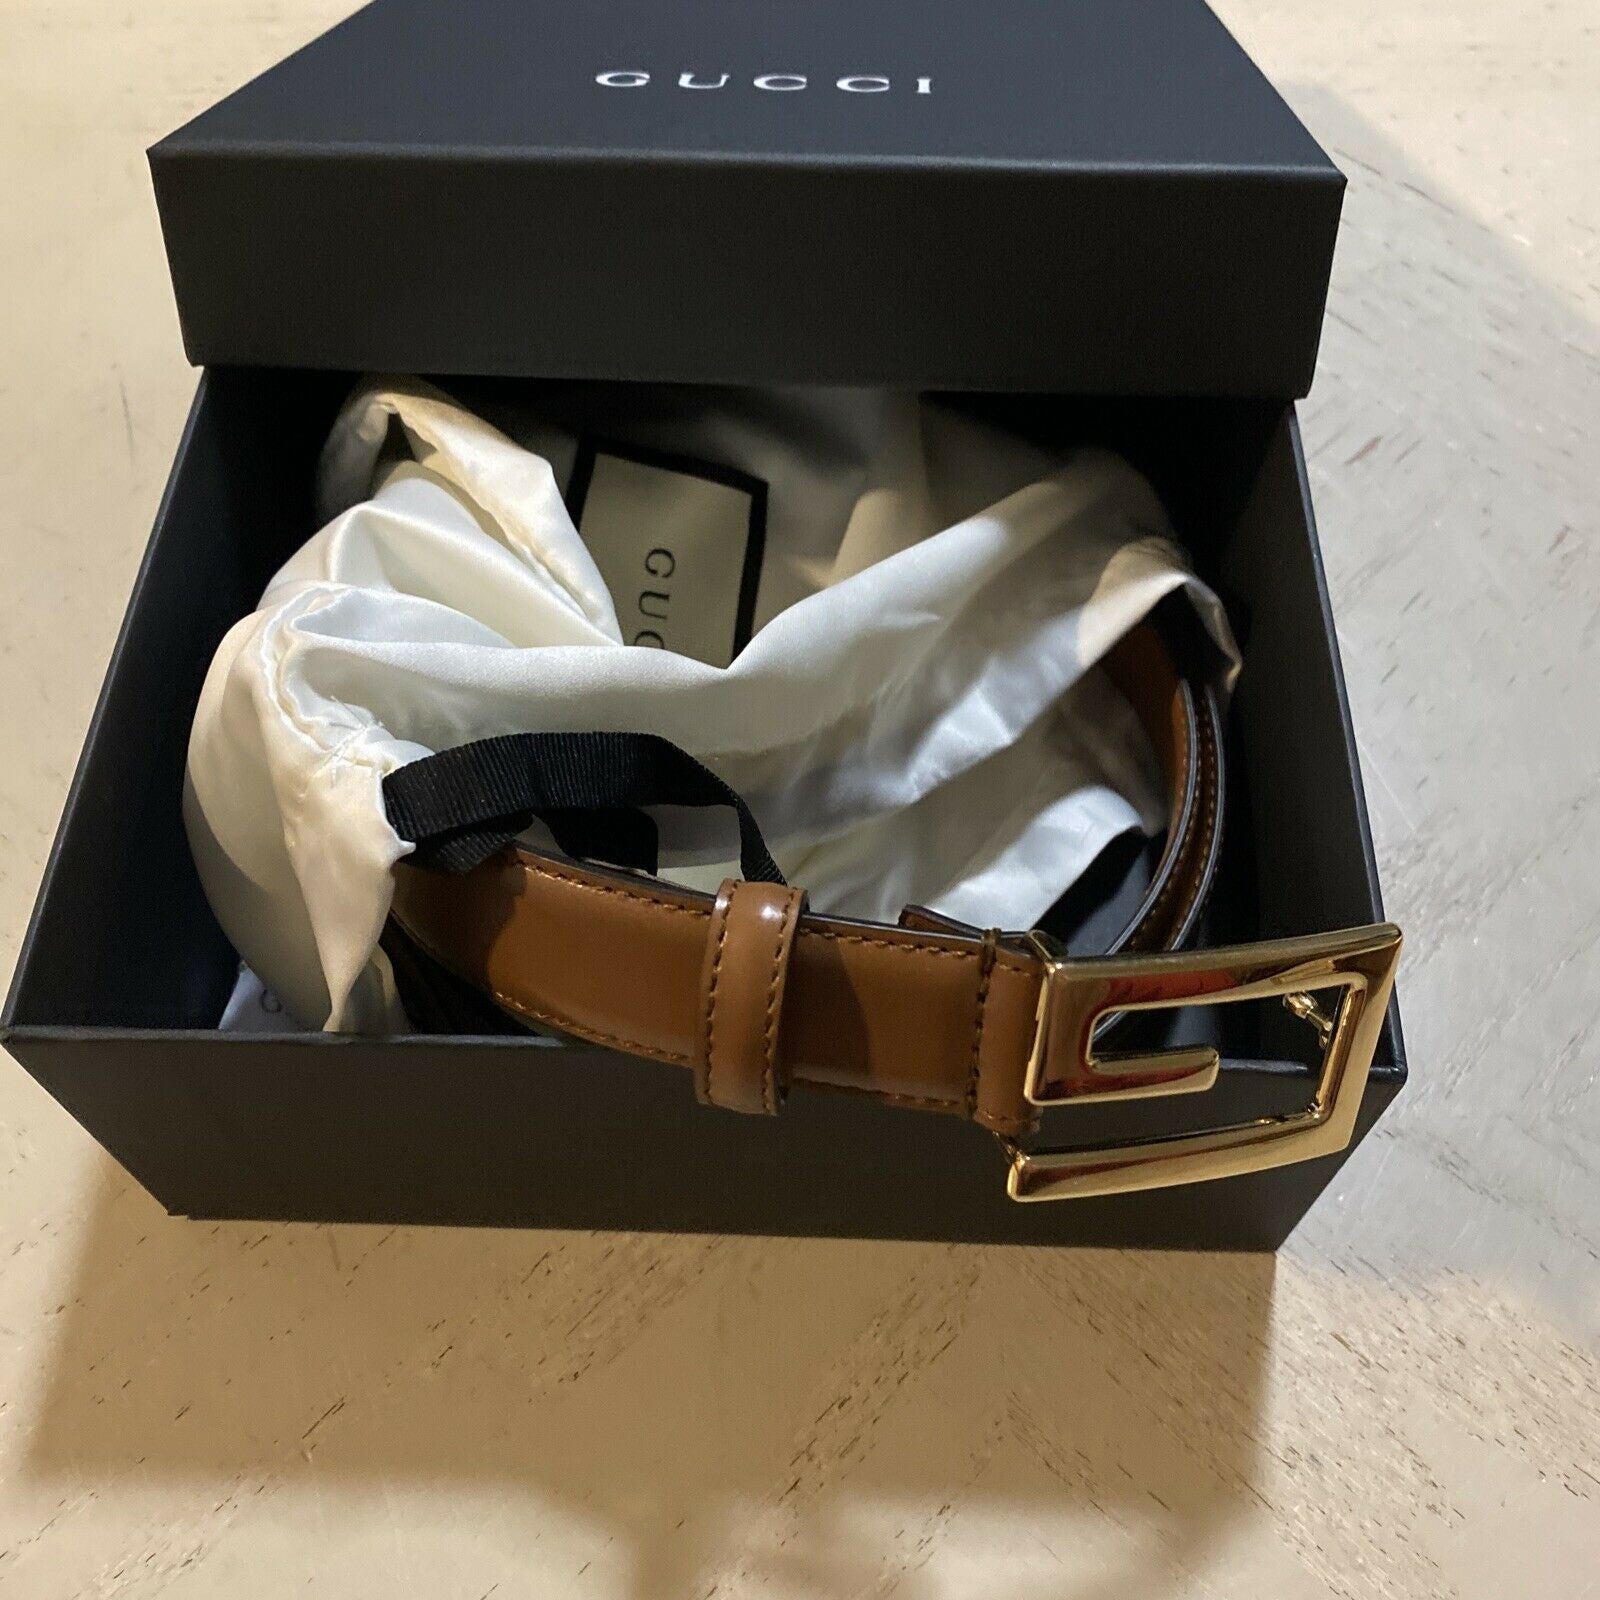 Neuer 890 $ Gucci Herren-Gürtel aus echtem Leder GG Braun 110/44 Italien